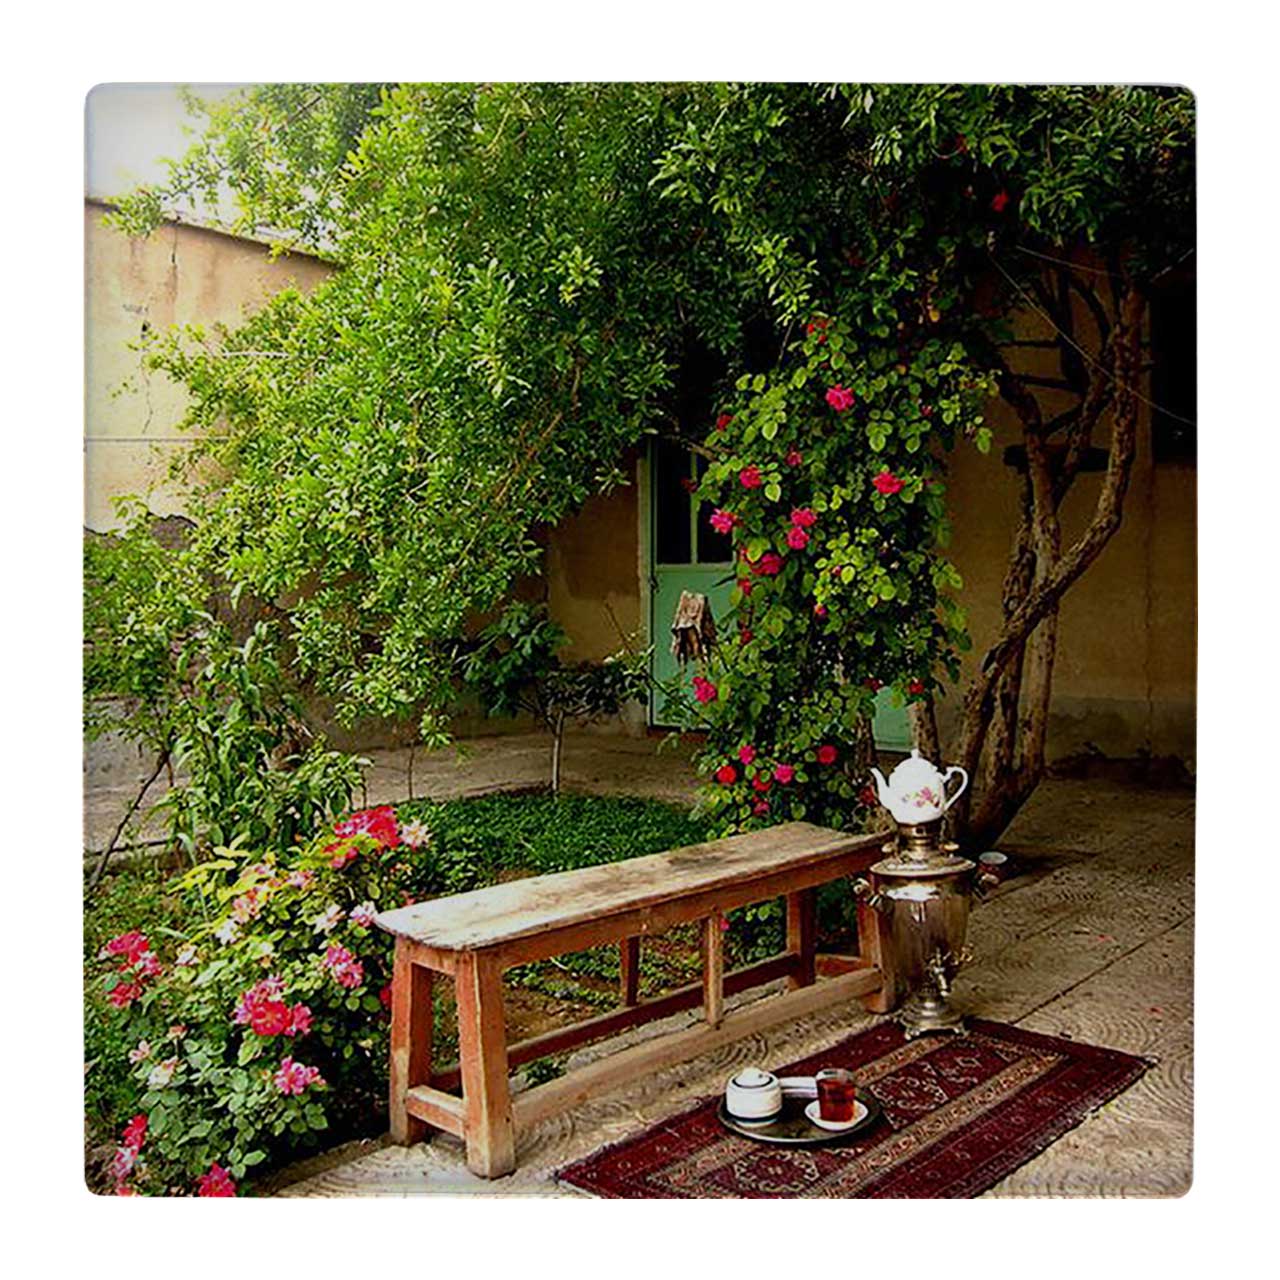 کاشی کارنیلا طرح حیاط ایرانی و نیمکت کد wk3552